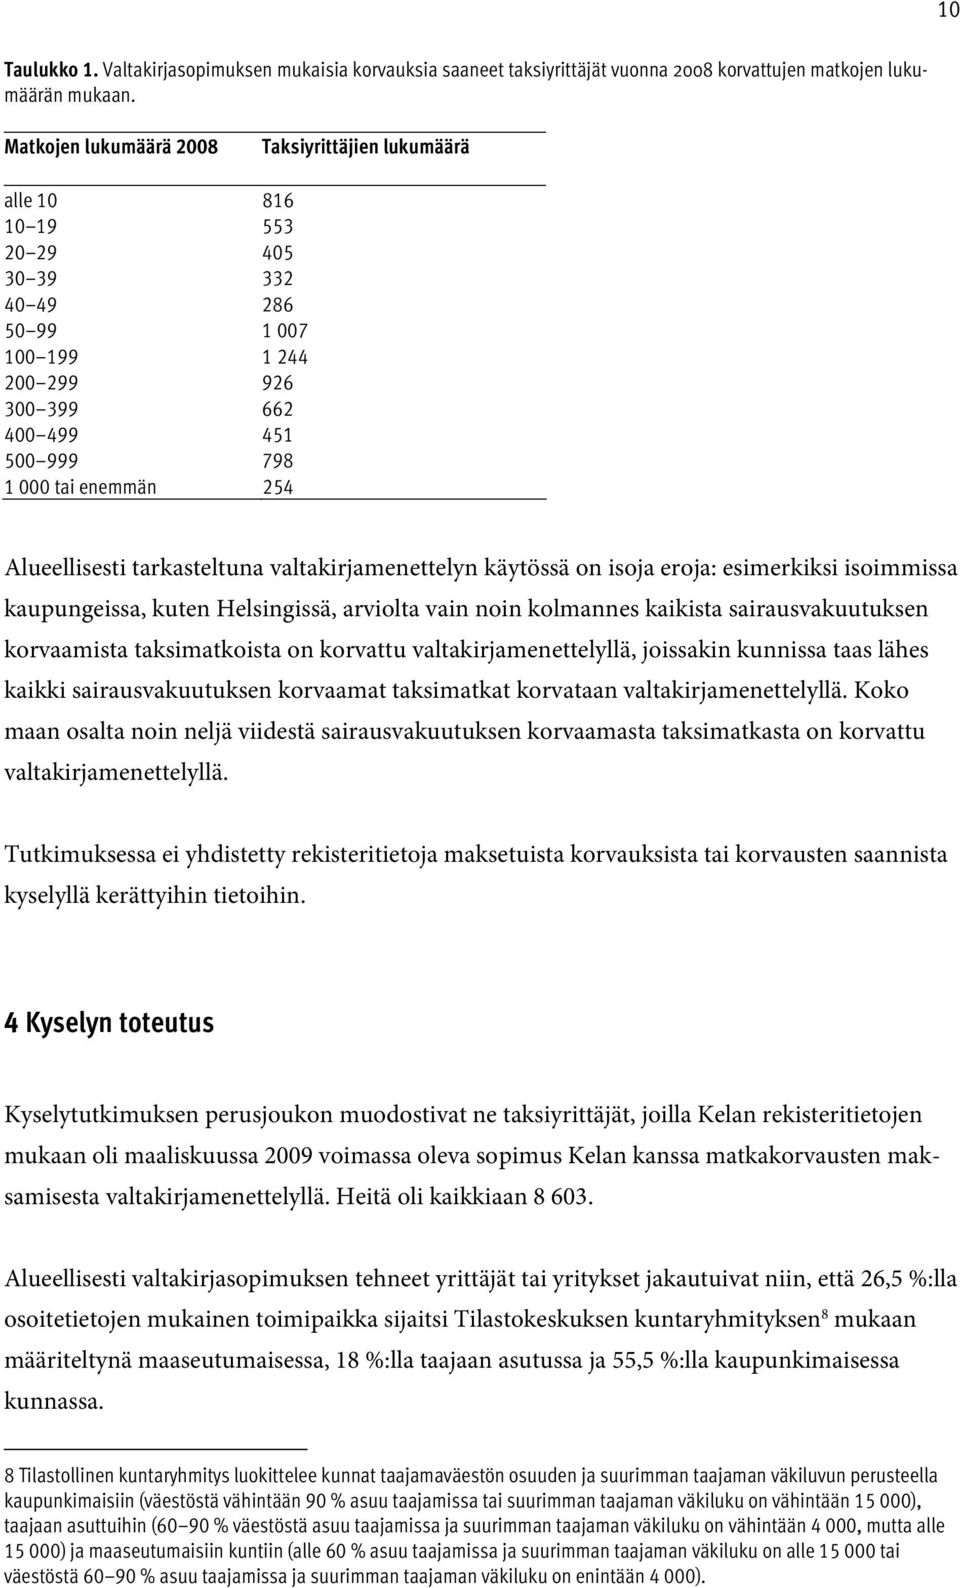 Alueellisesti tarkasteltuna valtakirjamenettelyn käytössä on isoja eroja: esimerkiksi isoimmissa kaupungeissa, kuten Helsingissä, arviolta vain noin kolmannes kaikista sairausvakuutuksen korvaamista